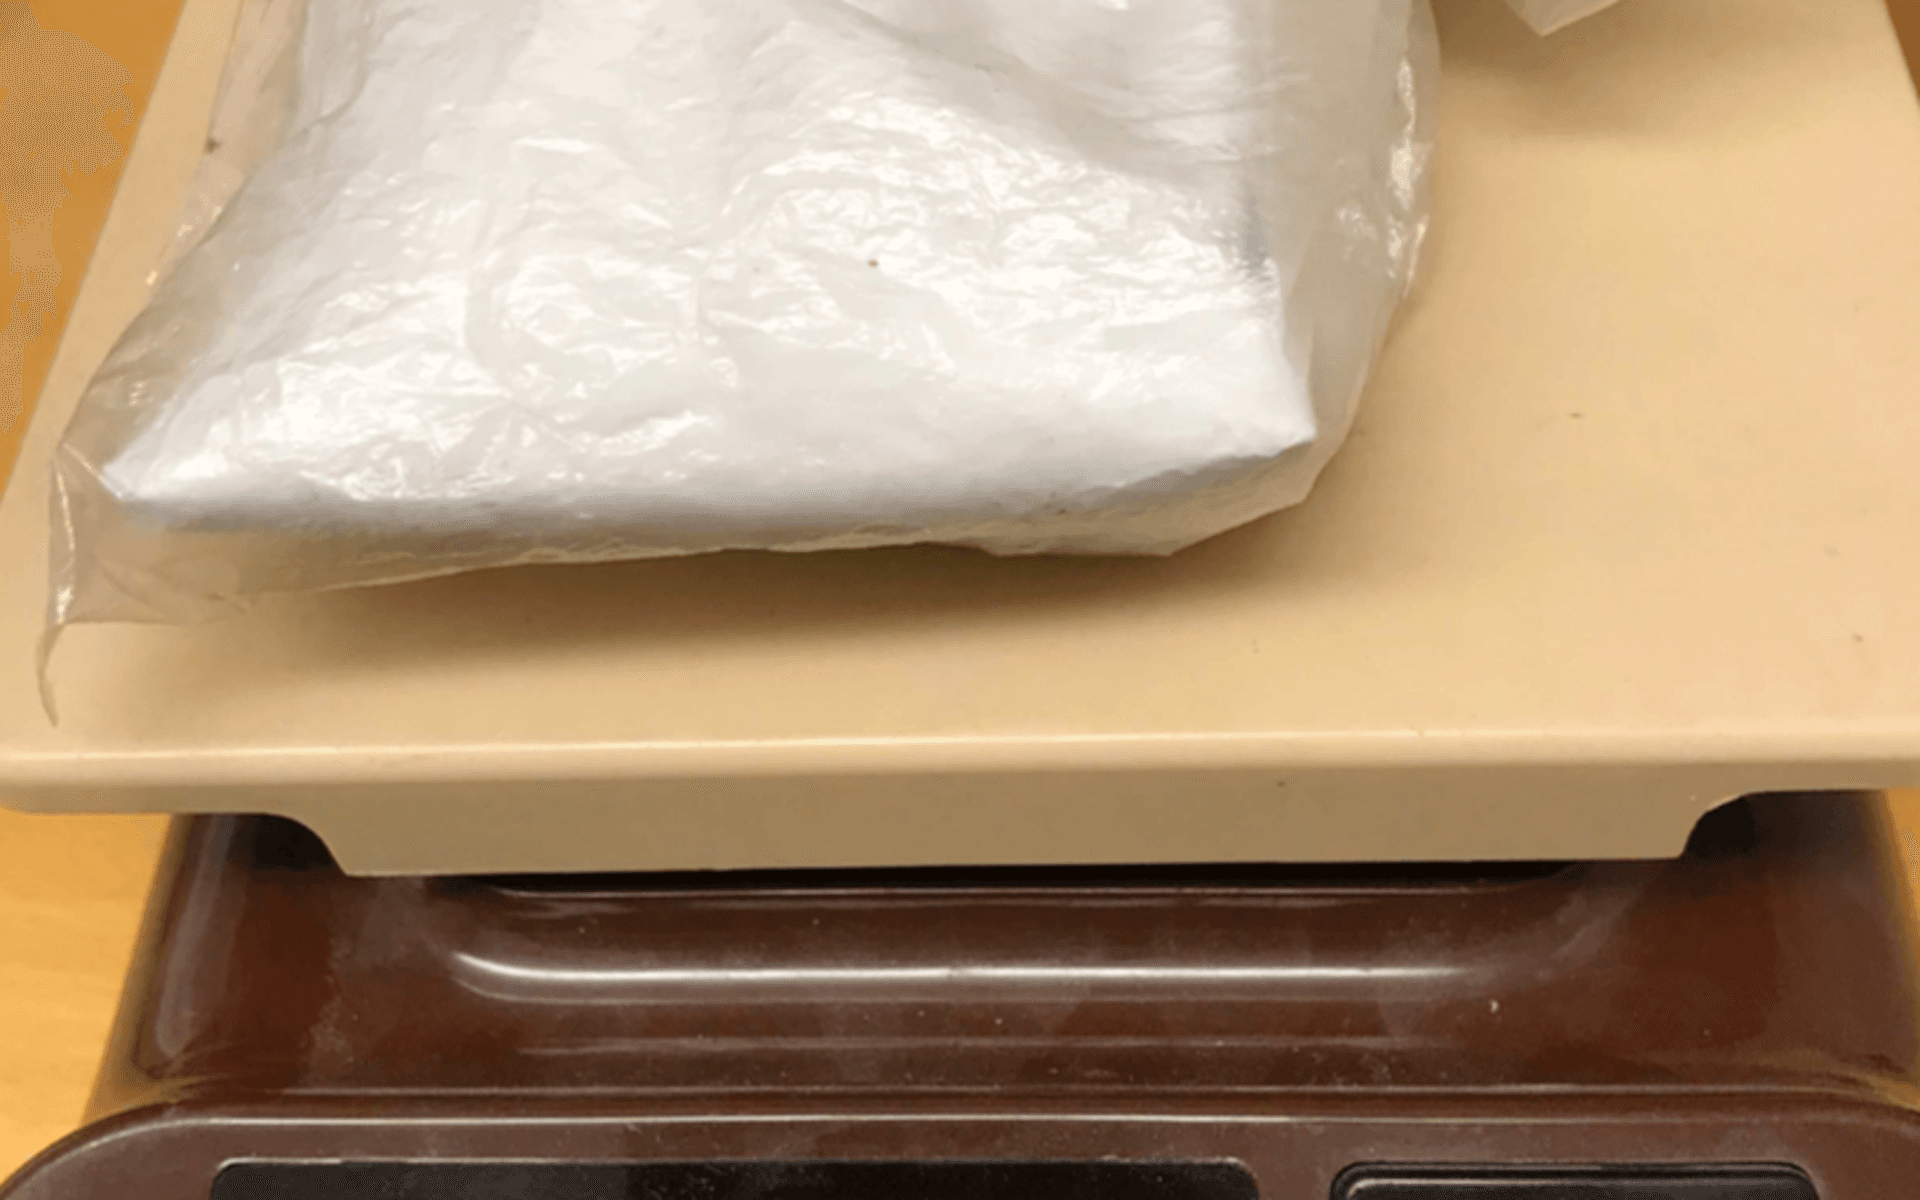 Påsen med det anträffade kokainet vägde enligt vågen 43 gram.